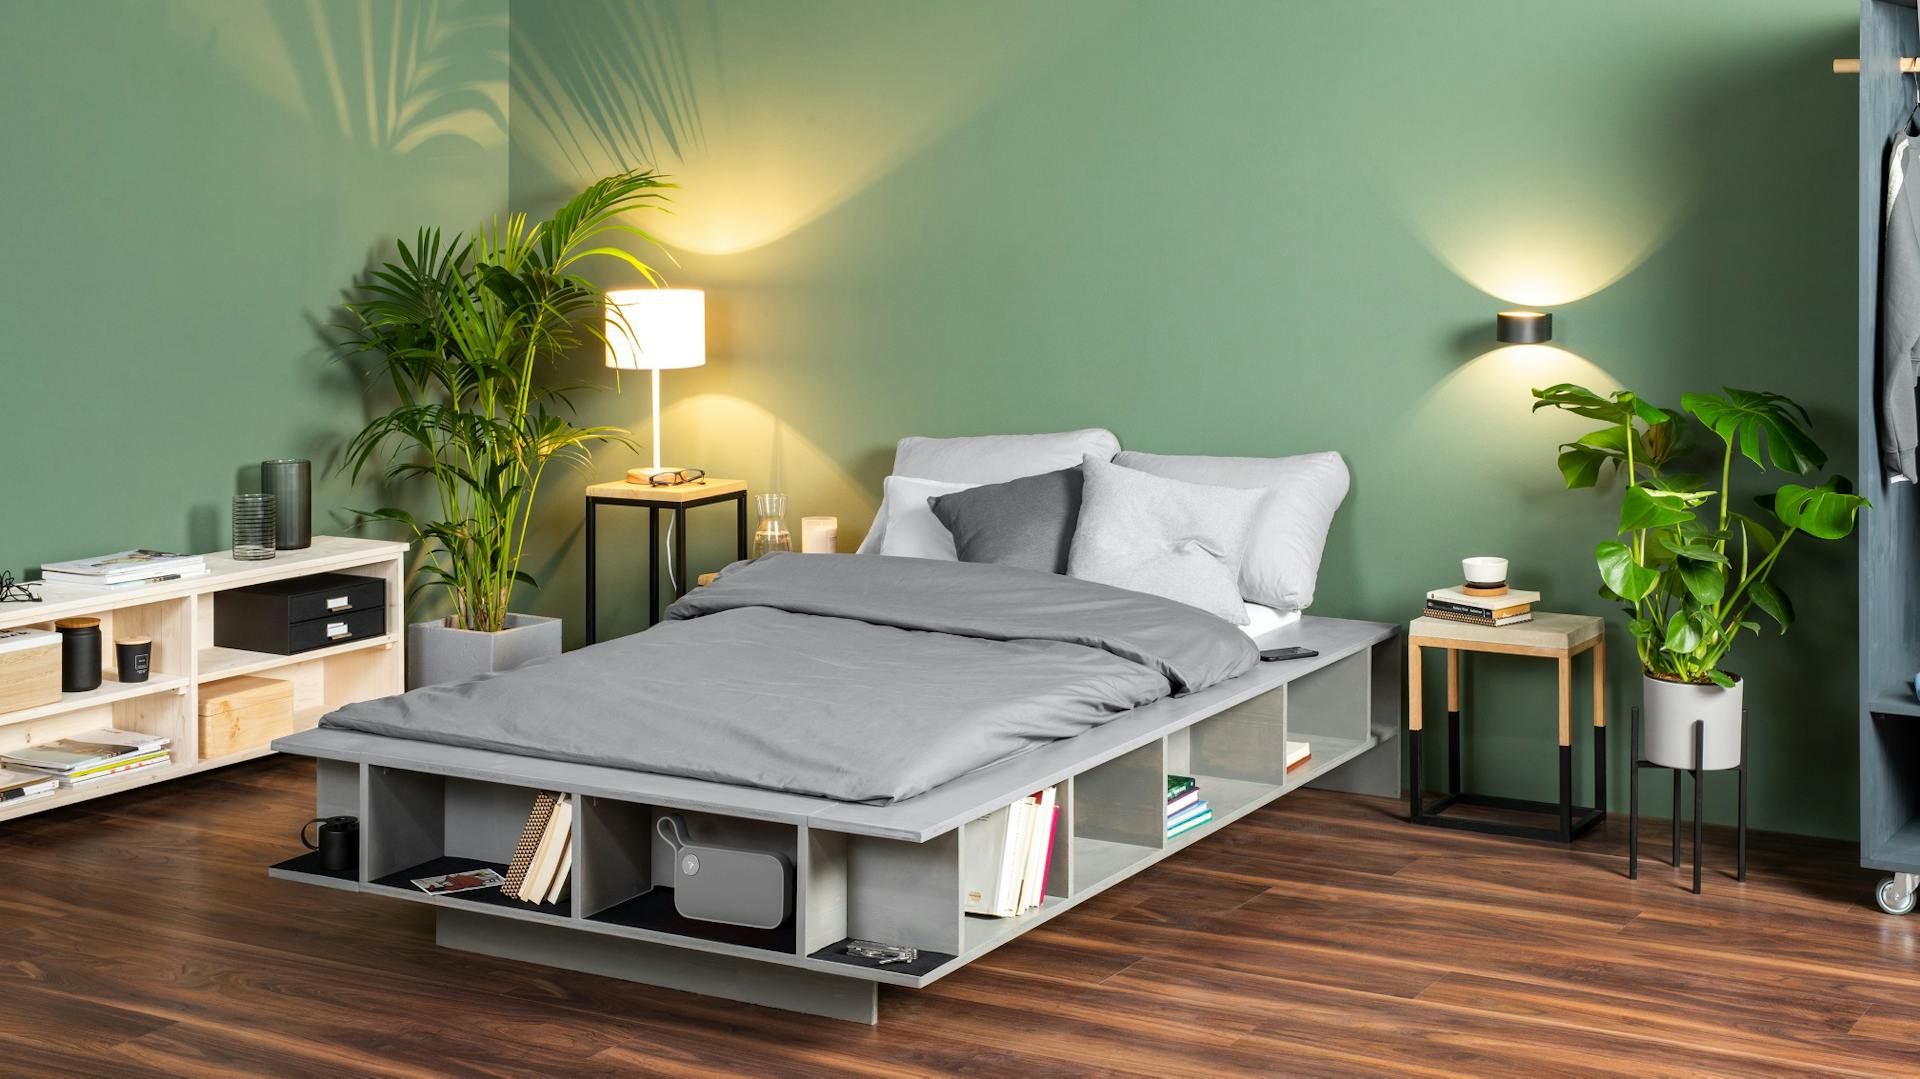 Graues Bett mit Regal im Rahmen auf dunklem Holzboden vor grüner Wand